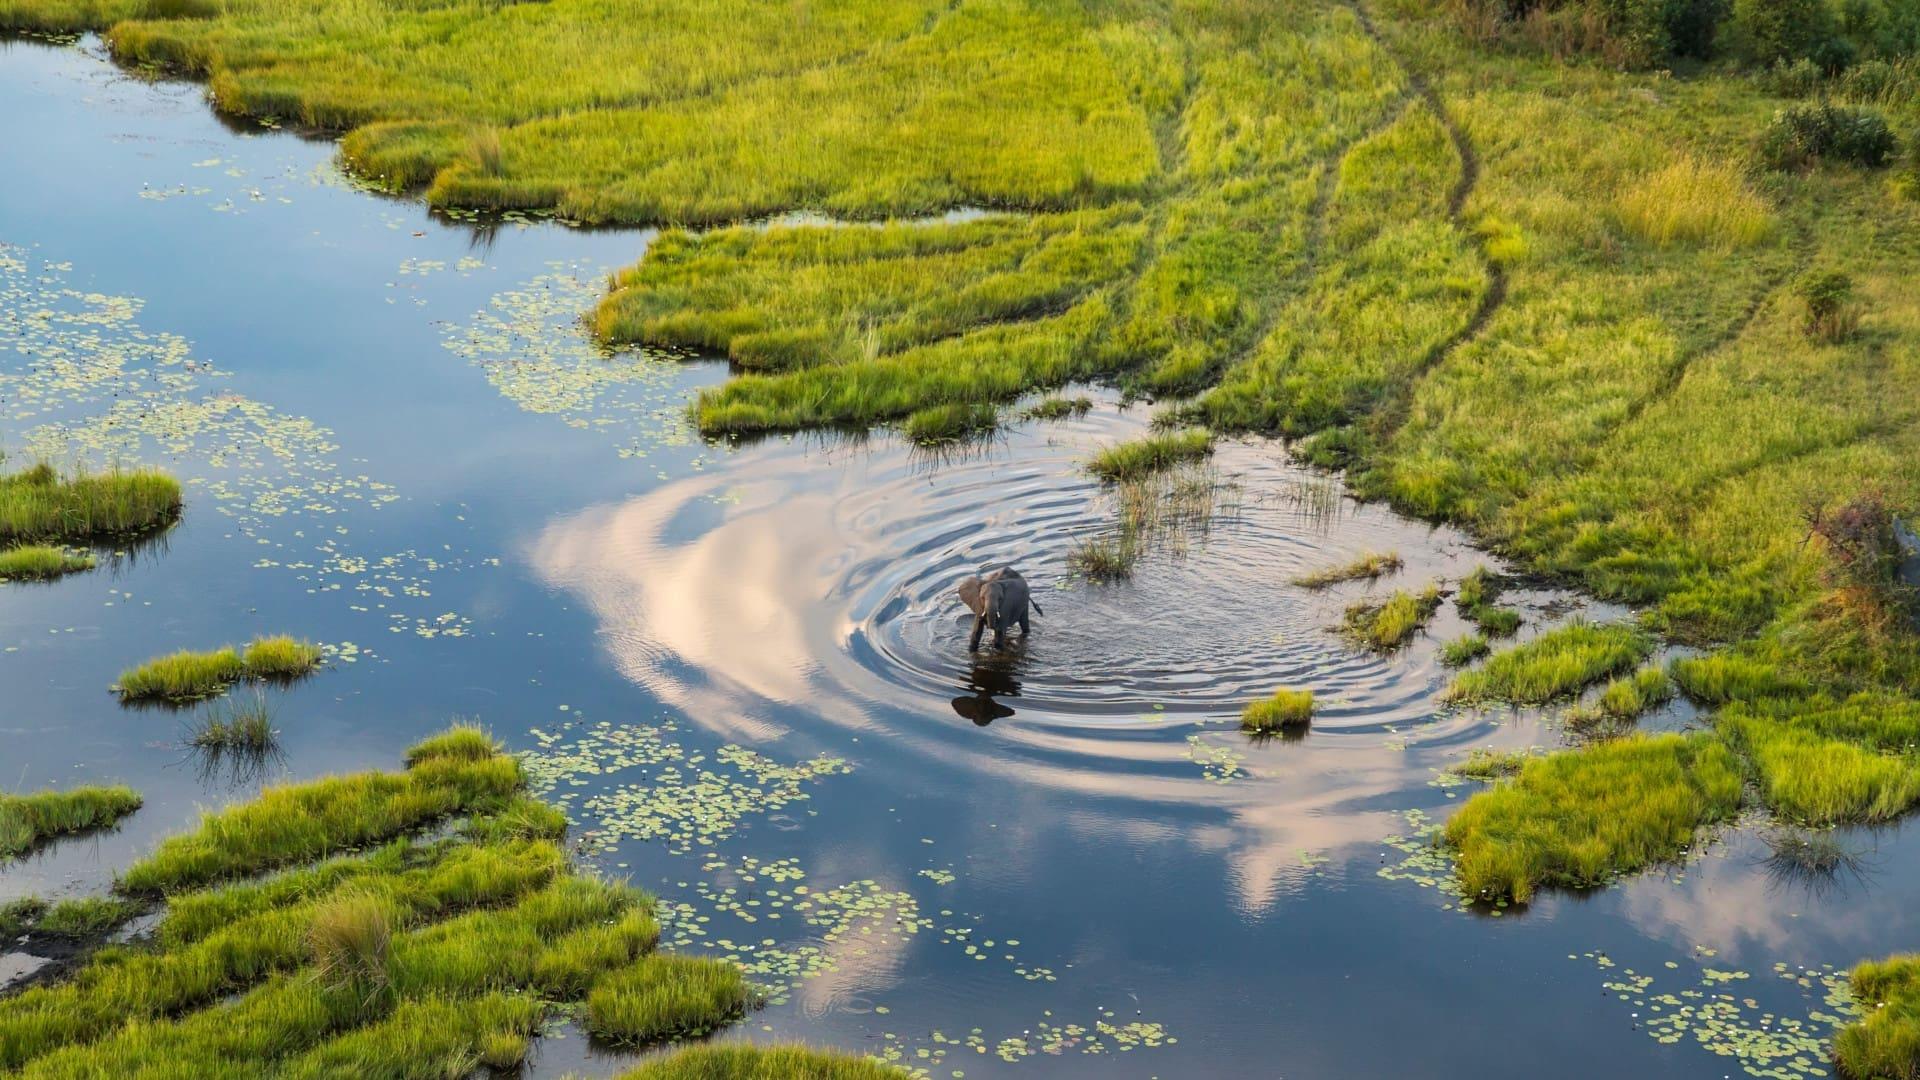 Okavango: A Flood of Life backdrop